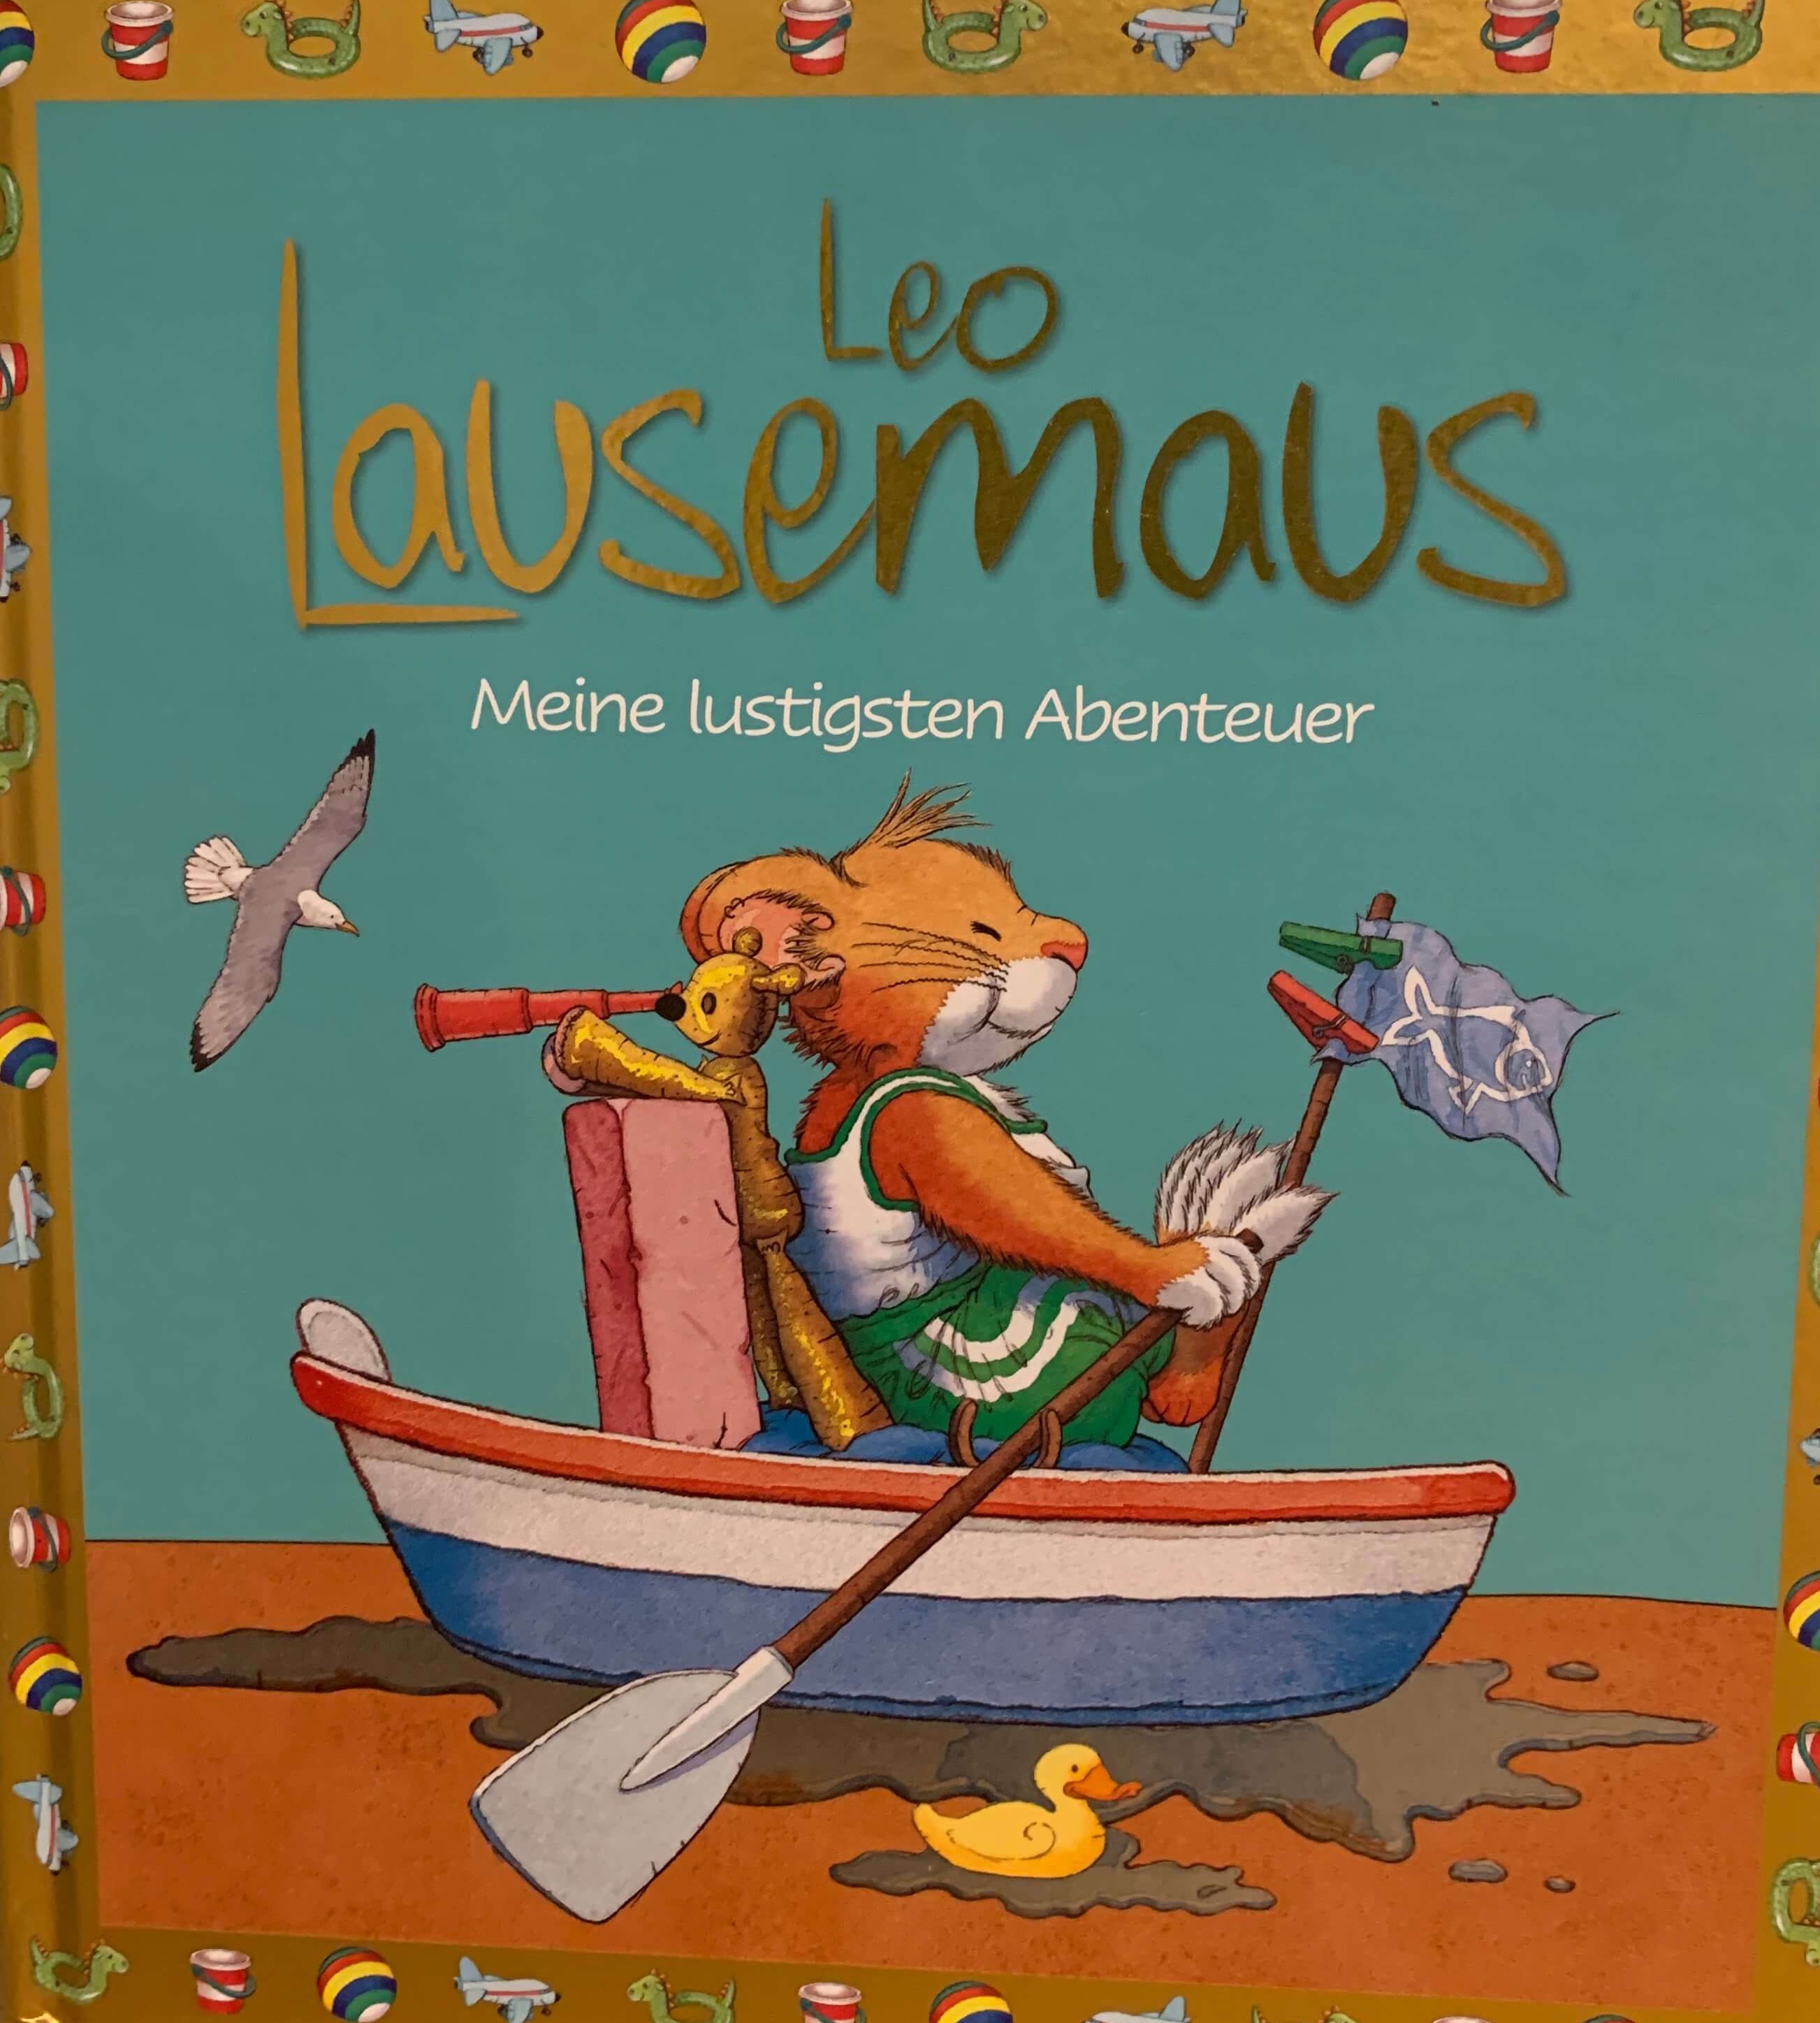 Leo Lausemaus - Meine lustigsten Abenteuer